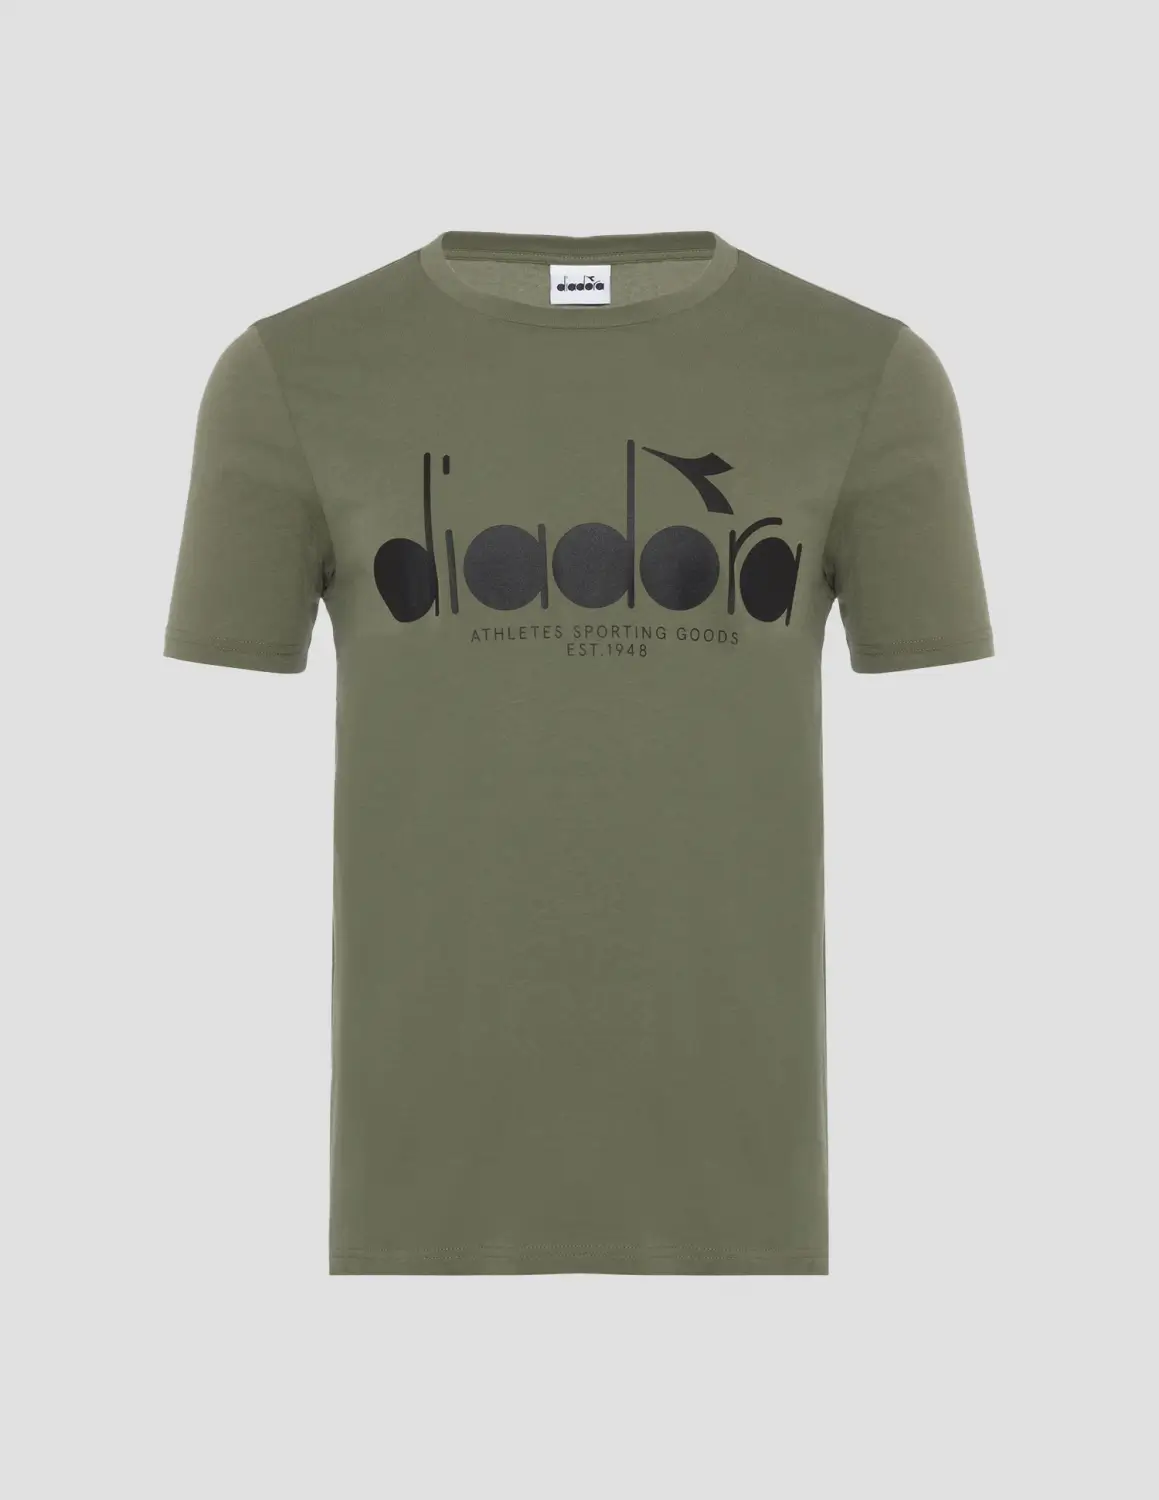 DIADORA  Ss T-shirt Iconic Asker Yeşili Erkek Tişört - 502.176633-70225